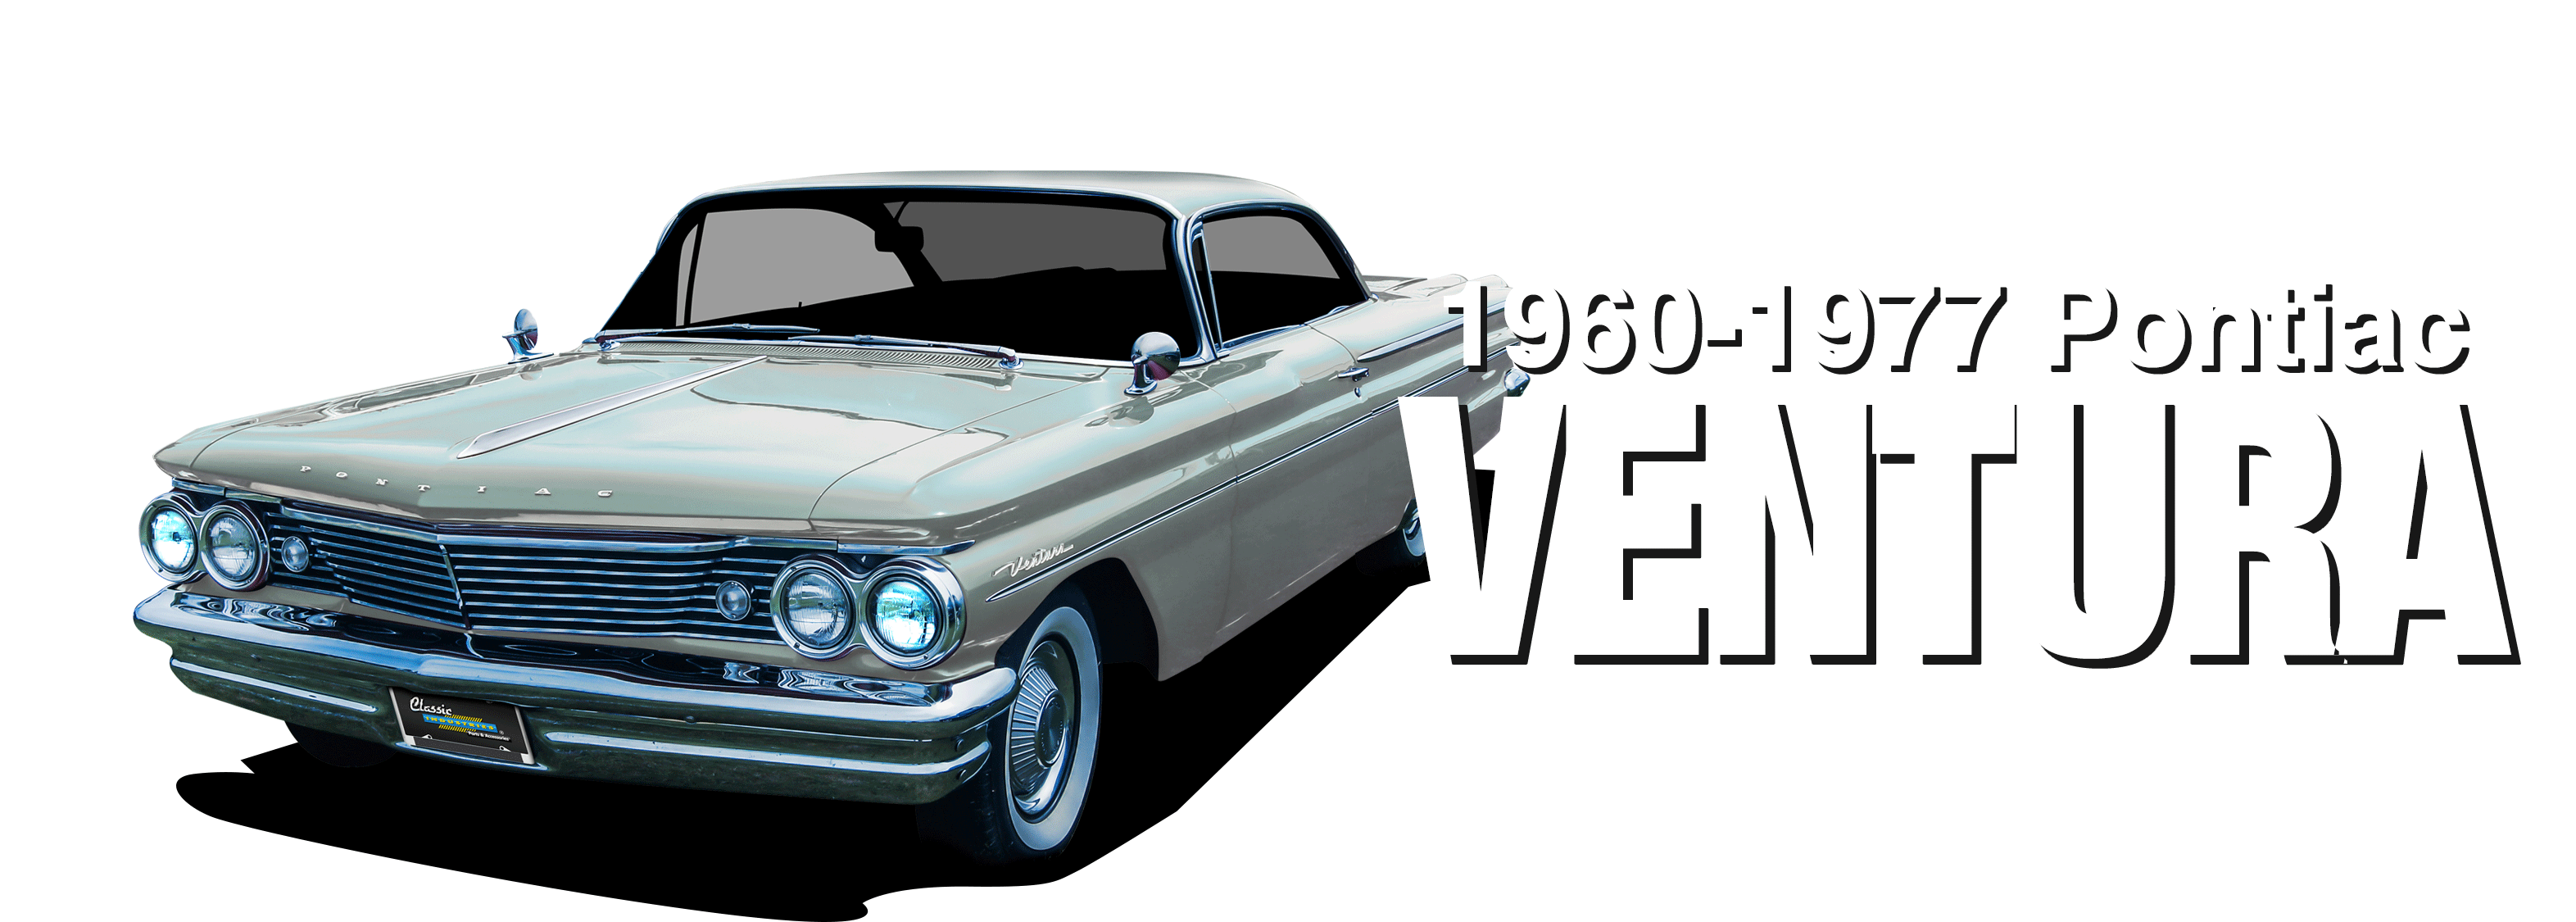 Pontiac-Ventura-vehicle-desktop